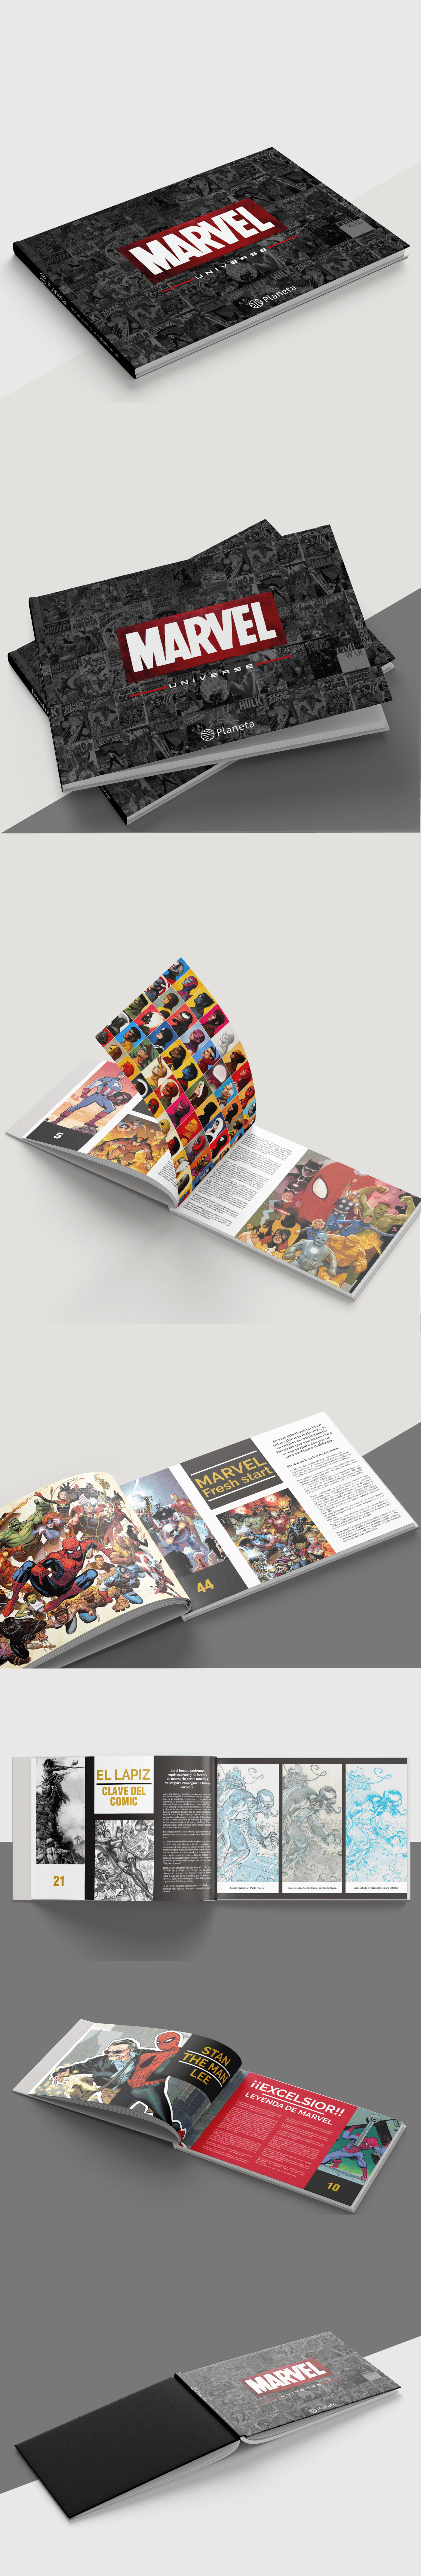 editorial book libro diagramación design editorialdesing graphicdesign brochure marvel marvelcomic